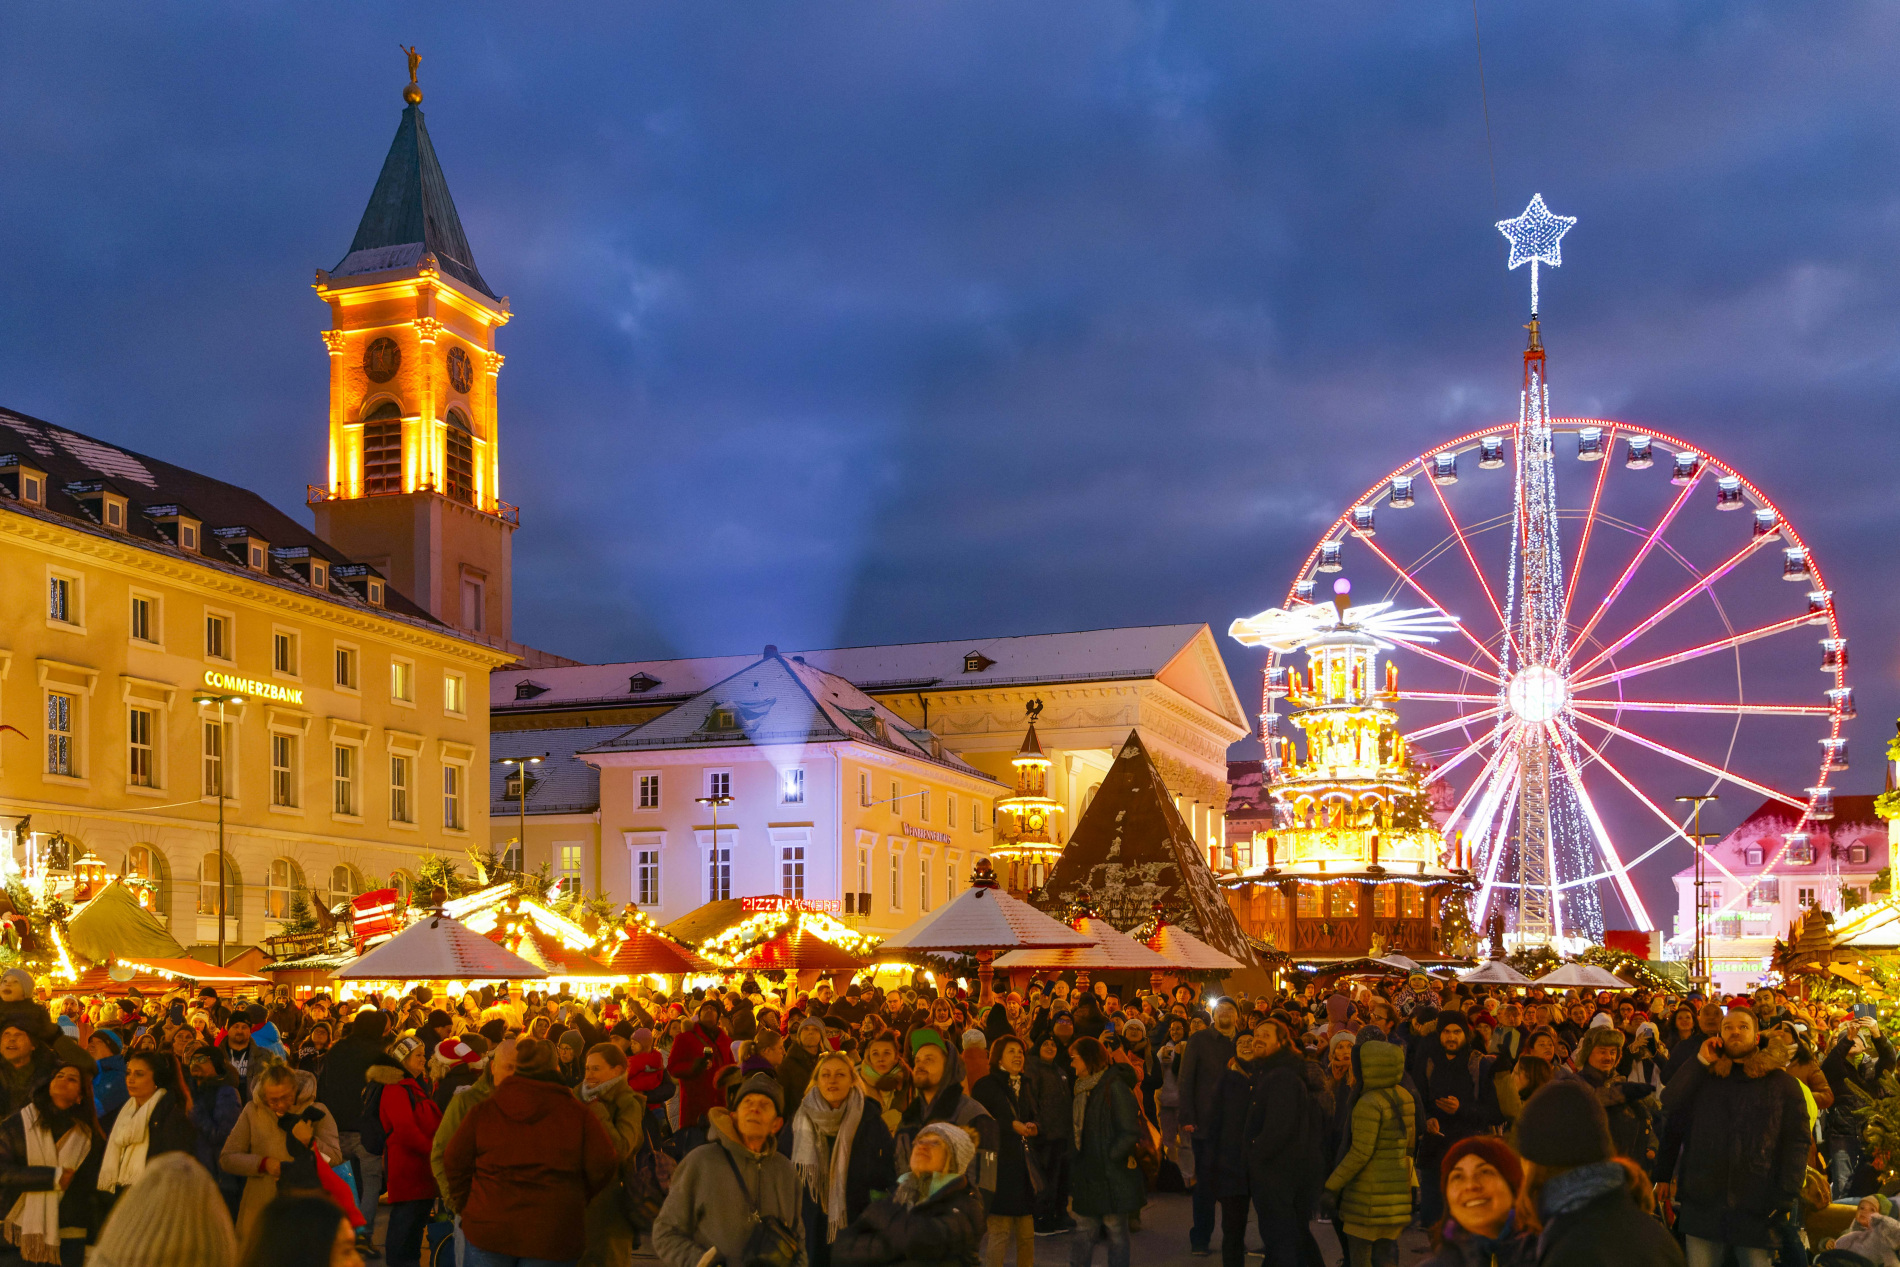 Festlich und unvergleichlich strahlt Karlsruhe mit seiner Weihnachtsstadt